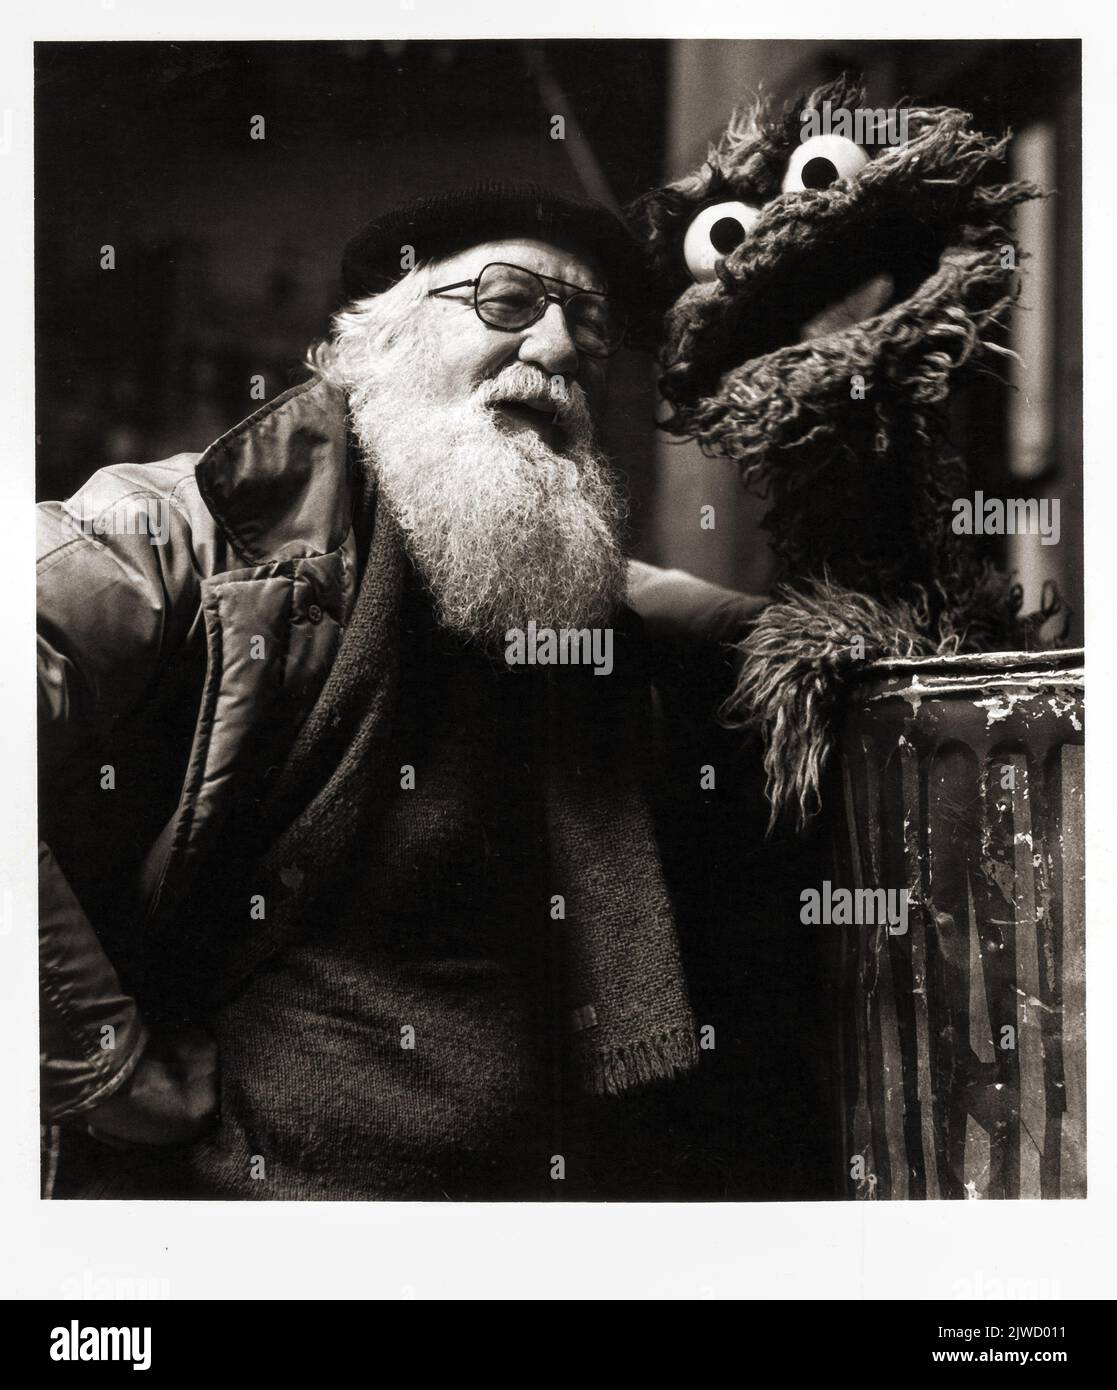 El legendario constructor de títeres Kermit Love en el set de Sesame Street con Oscar el lechón. Kermit diseñó y construyó varios Muppets incluyendo Big Bird. En Manhattan en 1978. Foto de stock